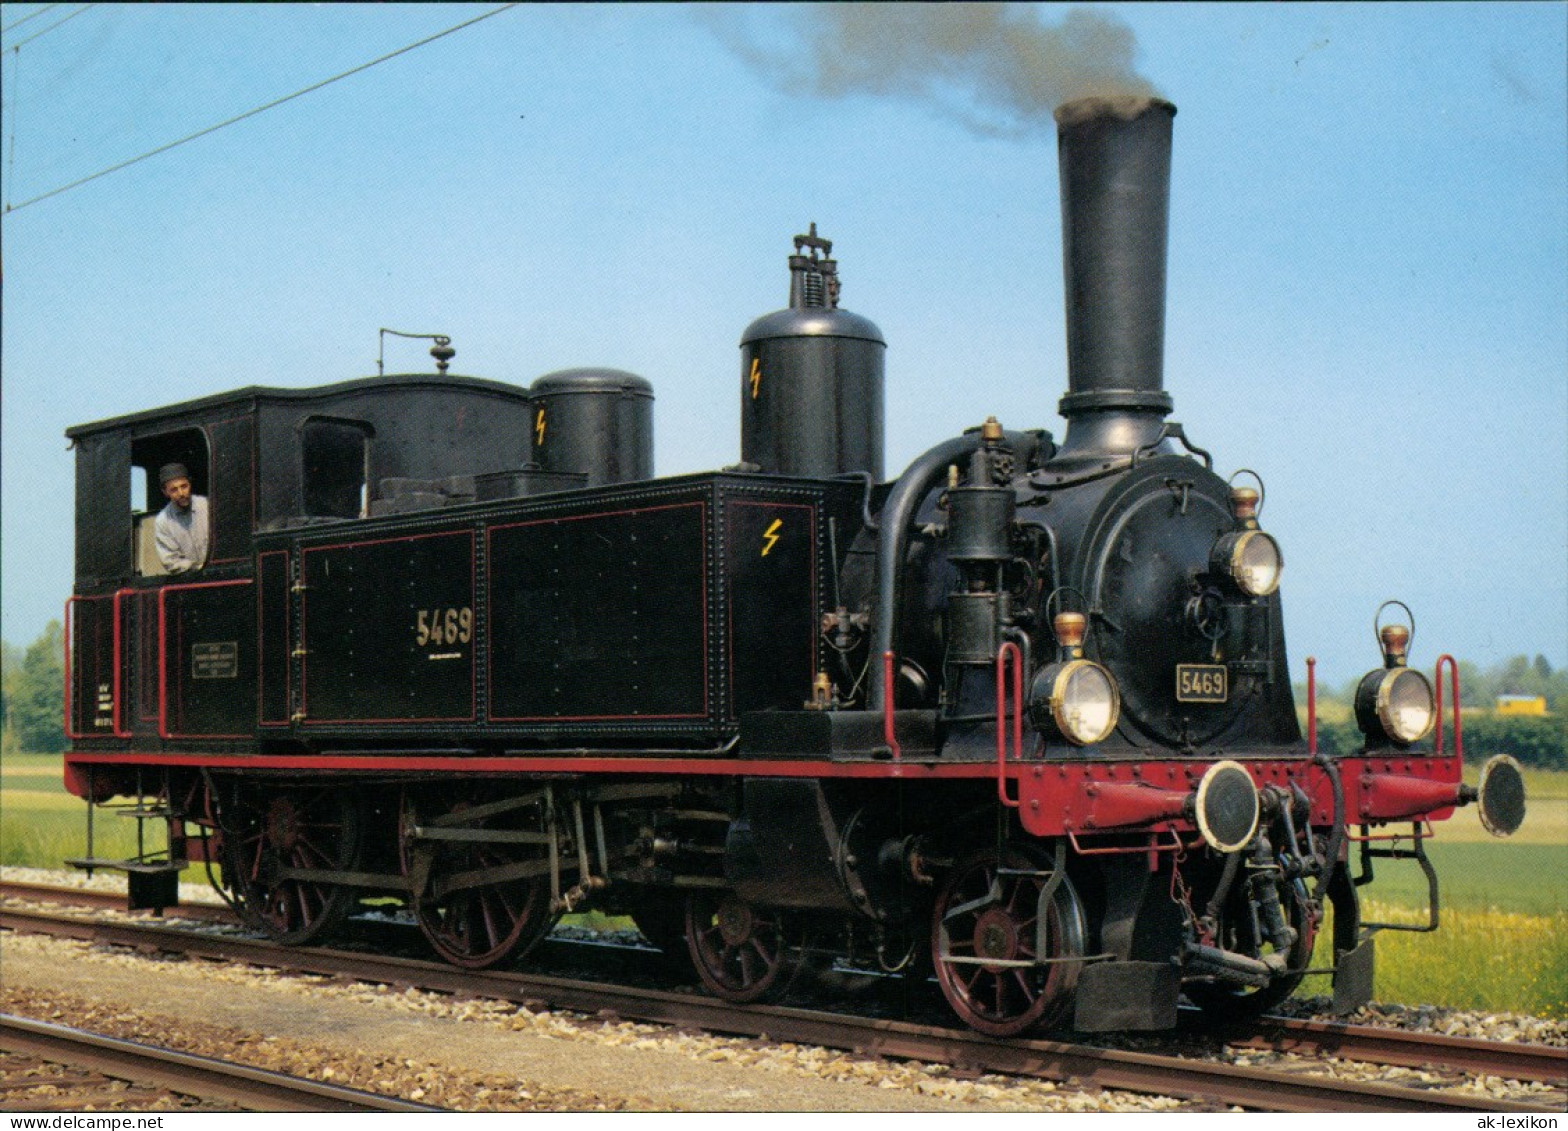 Verkehr & Eisenbahn (Railway) Dampflokomotive Eb 2/4 5469 Rail Boutique 1980 - Treinen